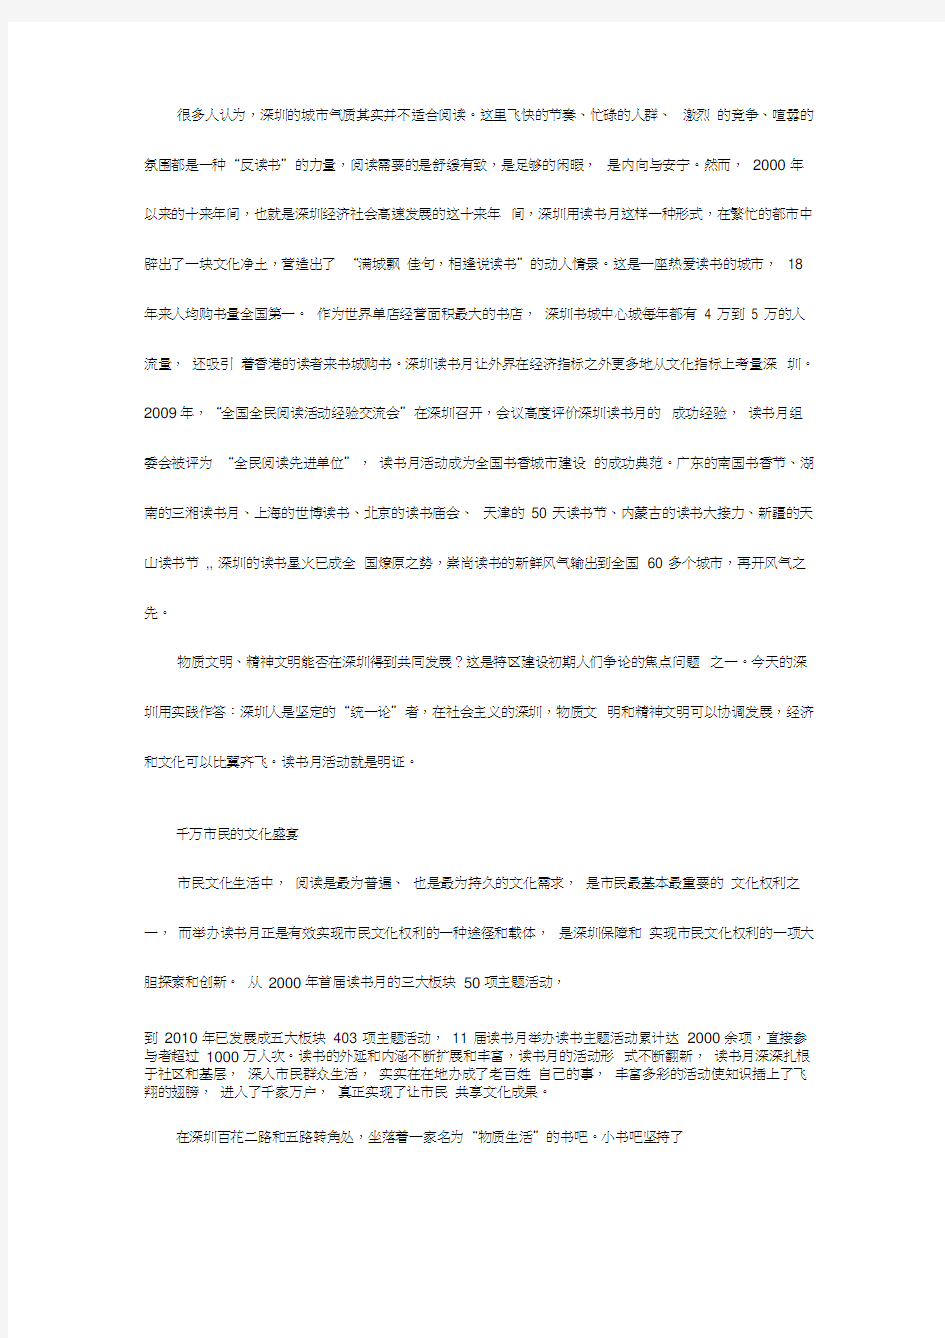 关于深圳市全民阅读活动的调查报告